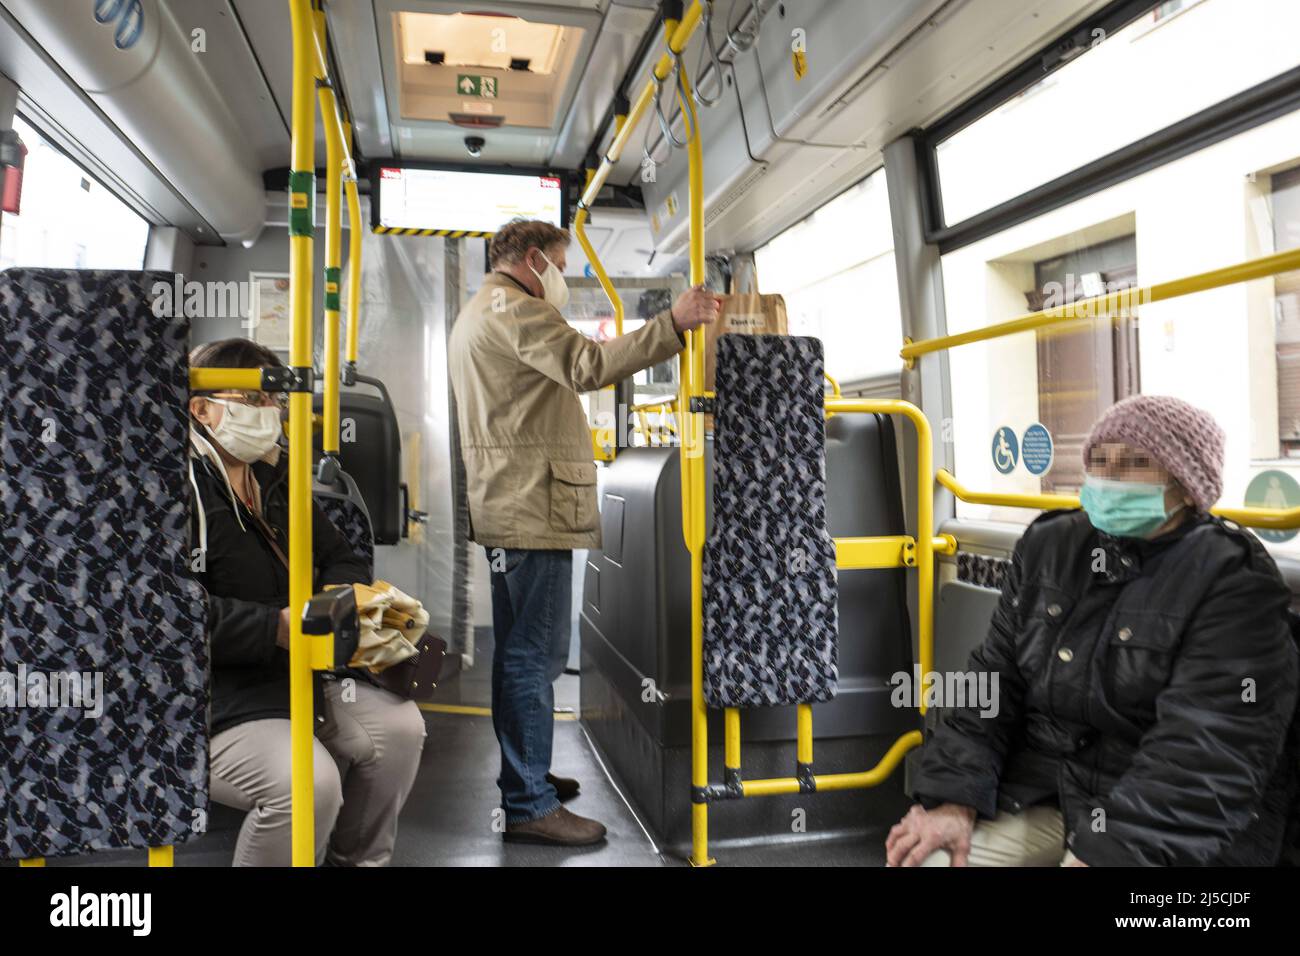 Alemania, Berlín, 04.05.2020. Pasajeros de un autobús de la BVG en Berlín-Mitte en 04.05.2020. La puerta delantera está cerrada para proteger al conductor. [traducción automática] Foto de stock